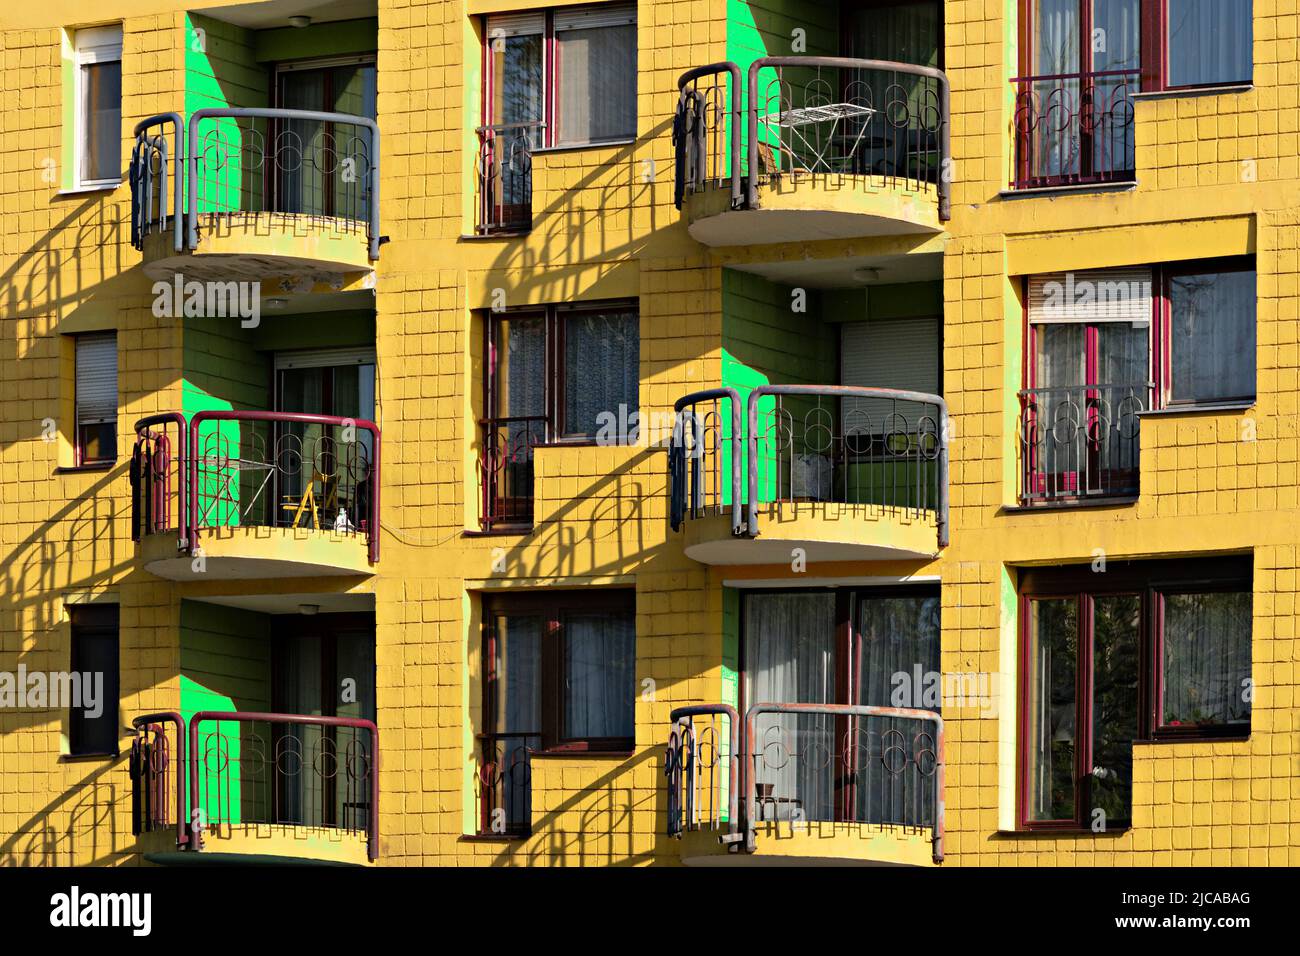 Immeuble d'appartements coloré peint jaune et vert, à Sarajevo, Bosnie-Herzégovine Banque D'Images